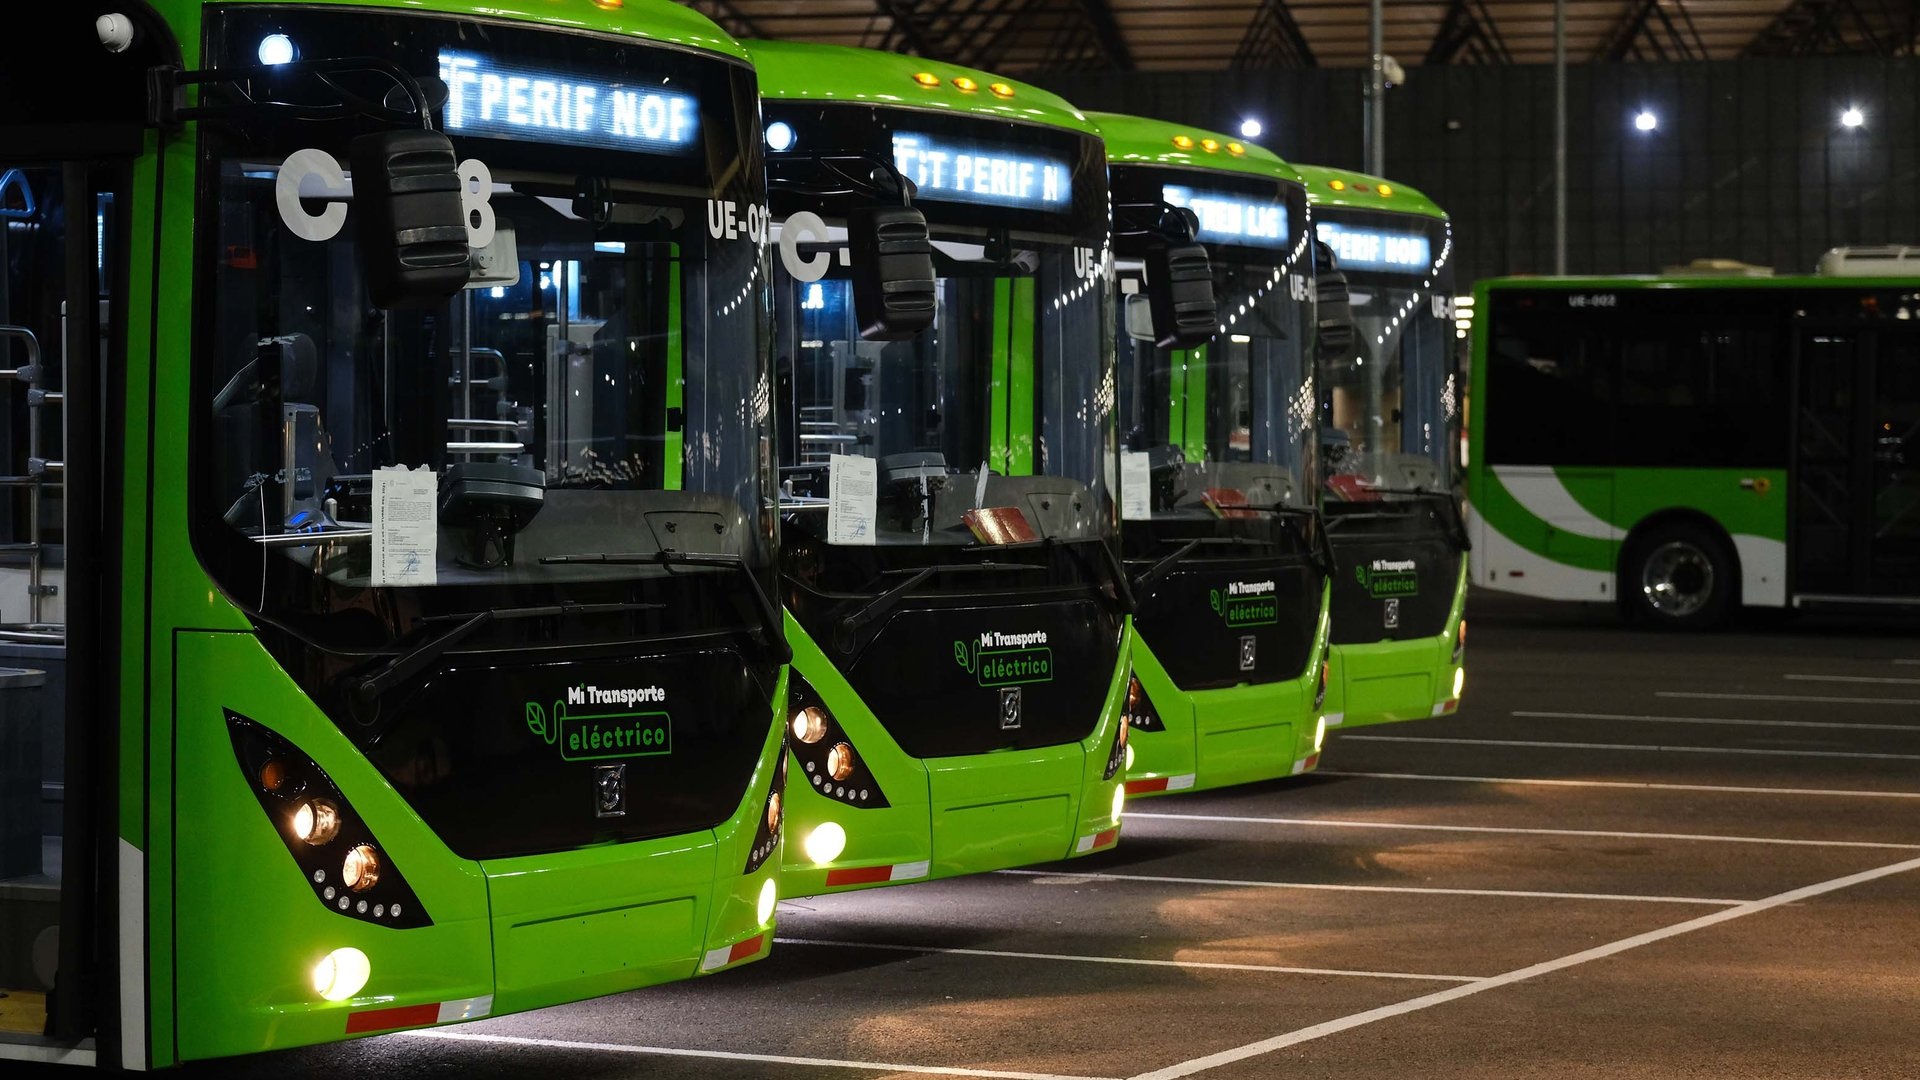 En más de 700 días de operación (casi 2 años), el sistema de buses Mi Transporte Eléctrico ha recorrido más de 6 millones de kilómetros. En el campo ambiental, se han dejado de emitir 7.6 toneladas de dióxido de carbono a la atmósfera del Área Metropolitana de Guadalajara